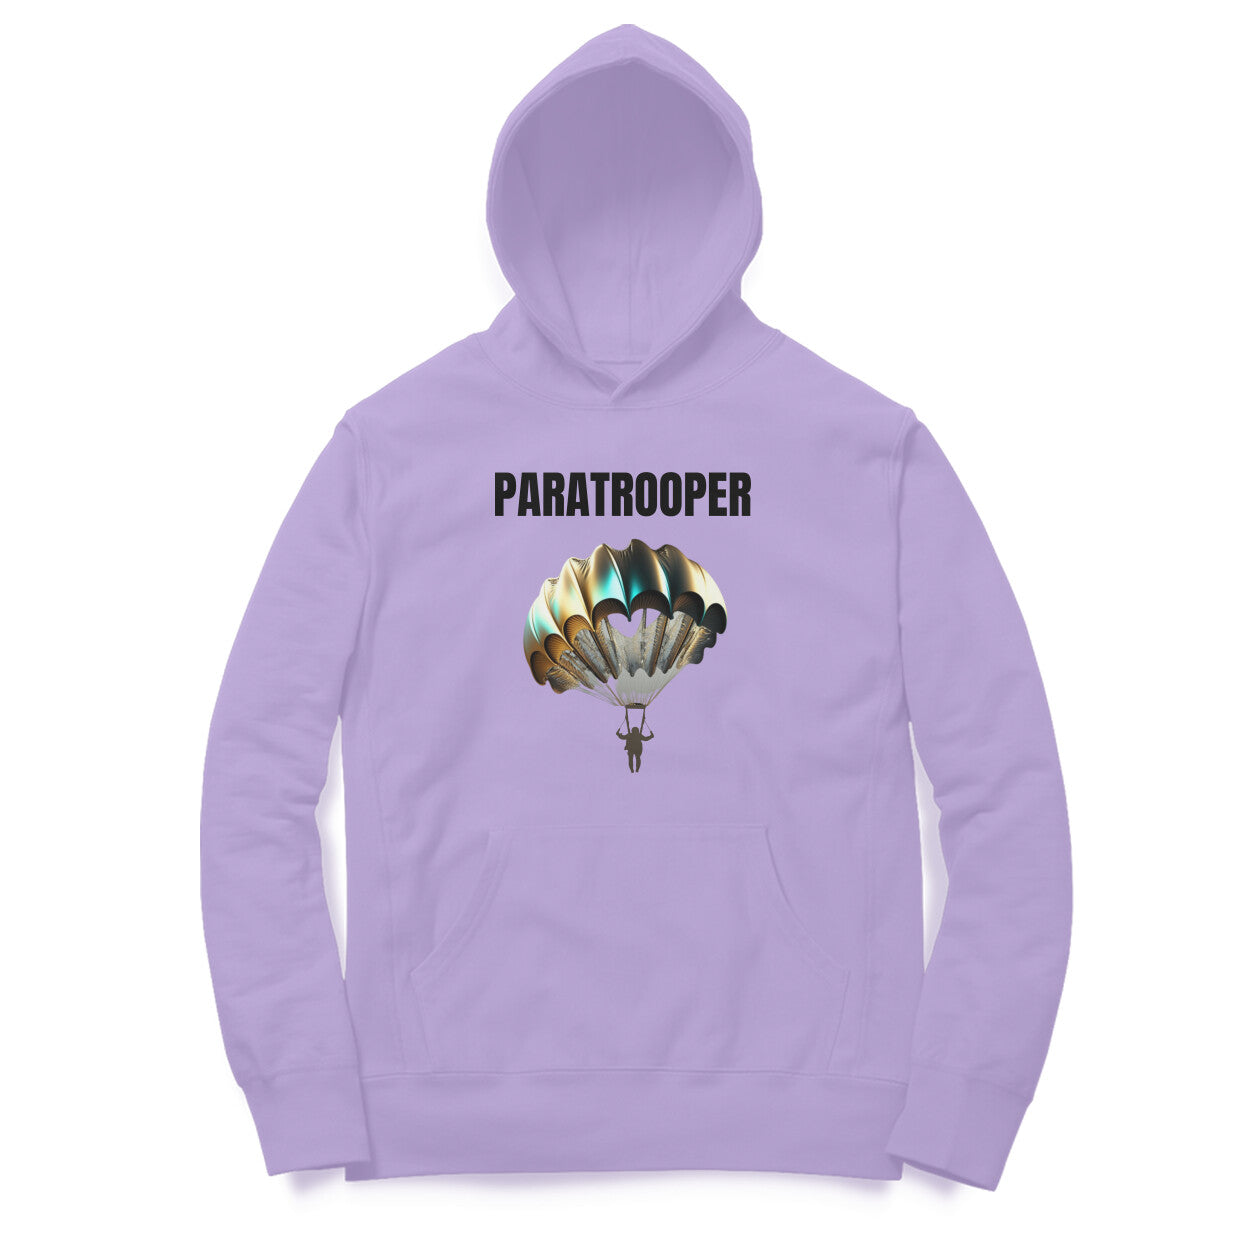 Paratrooper' hoodie